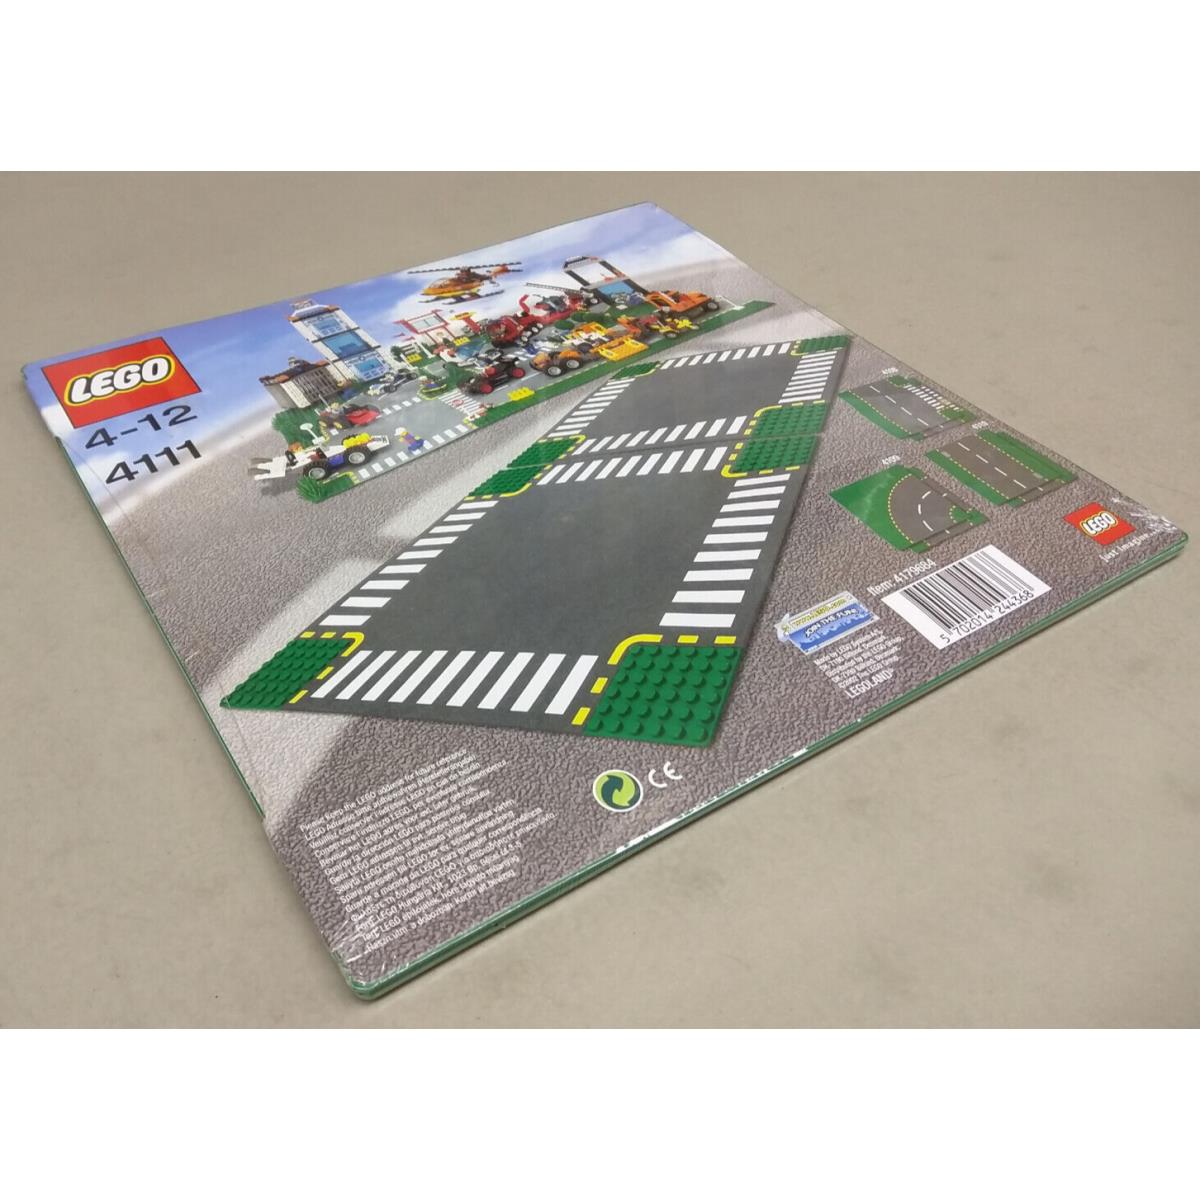 Lego toy  - Green